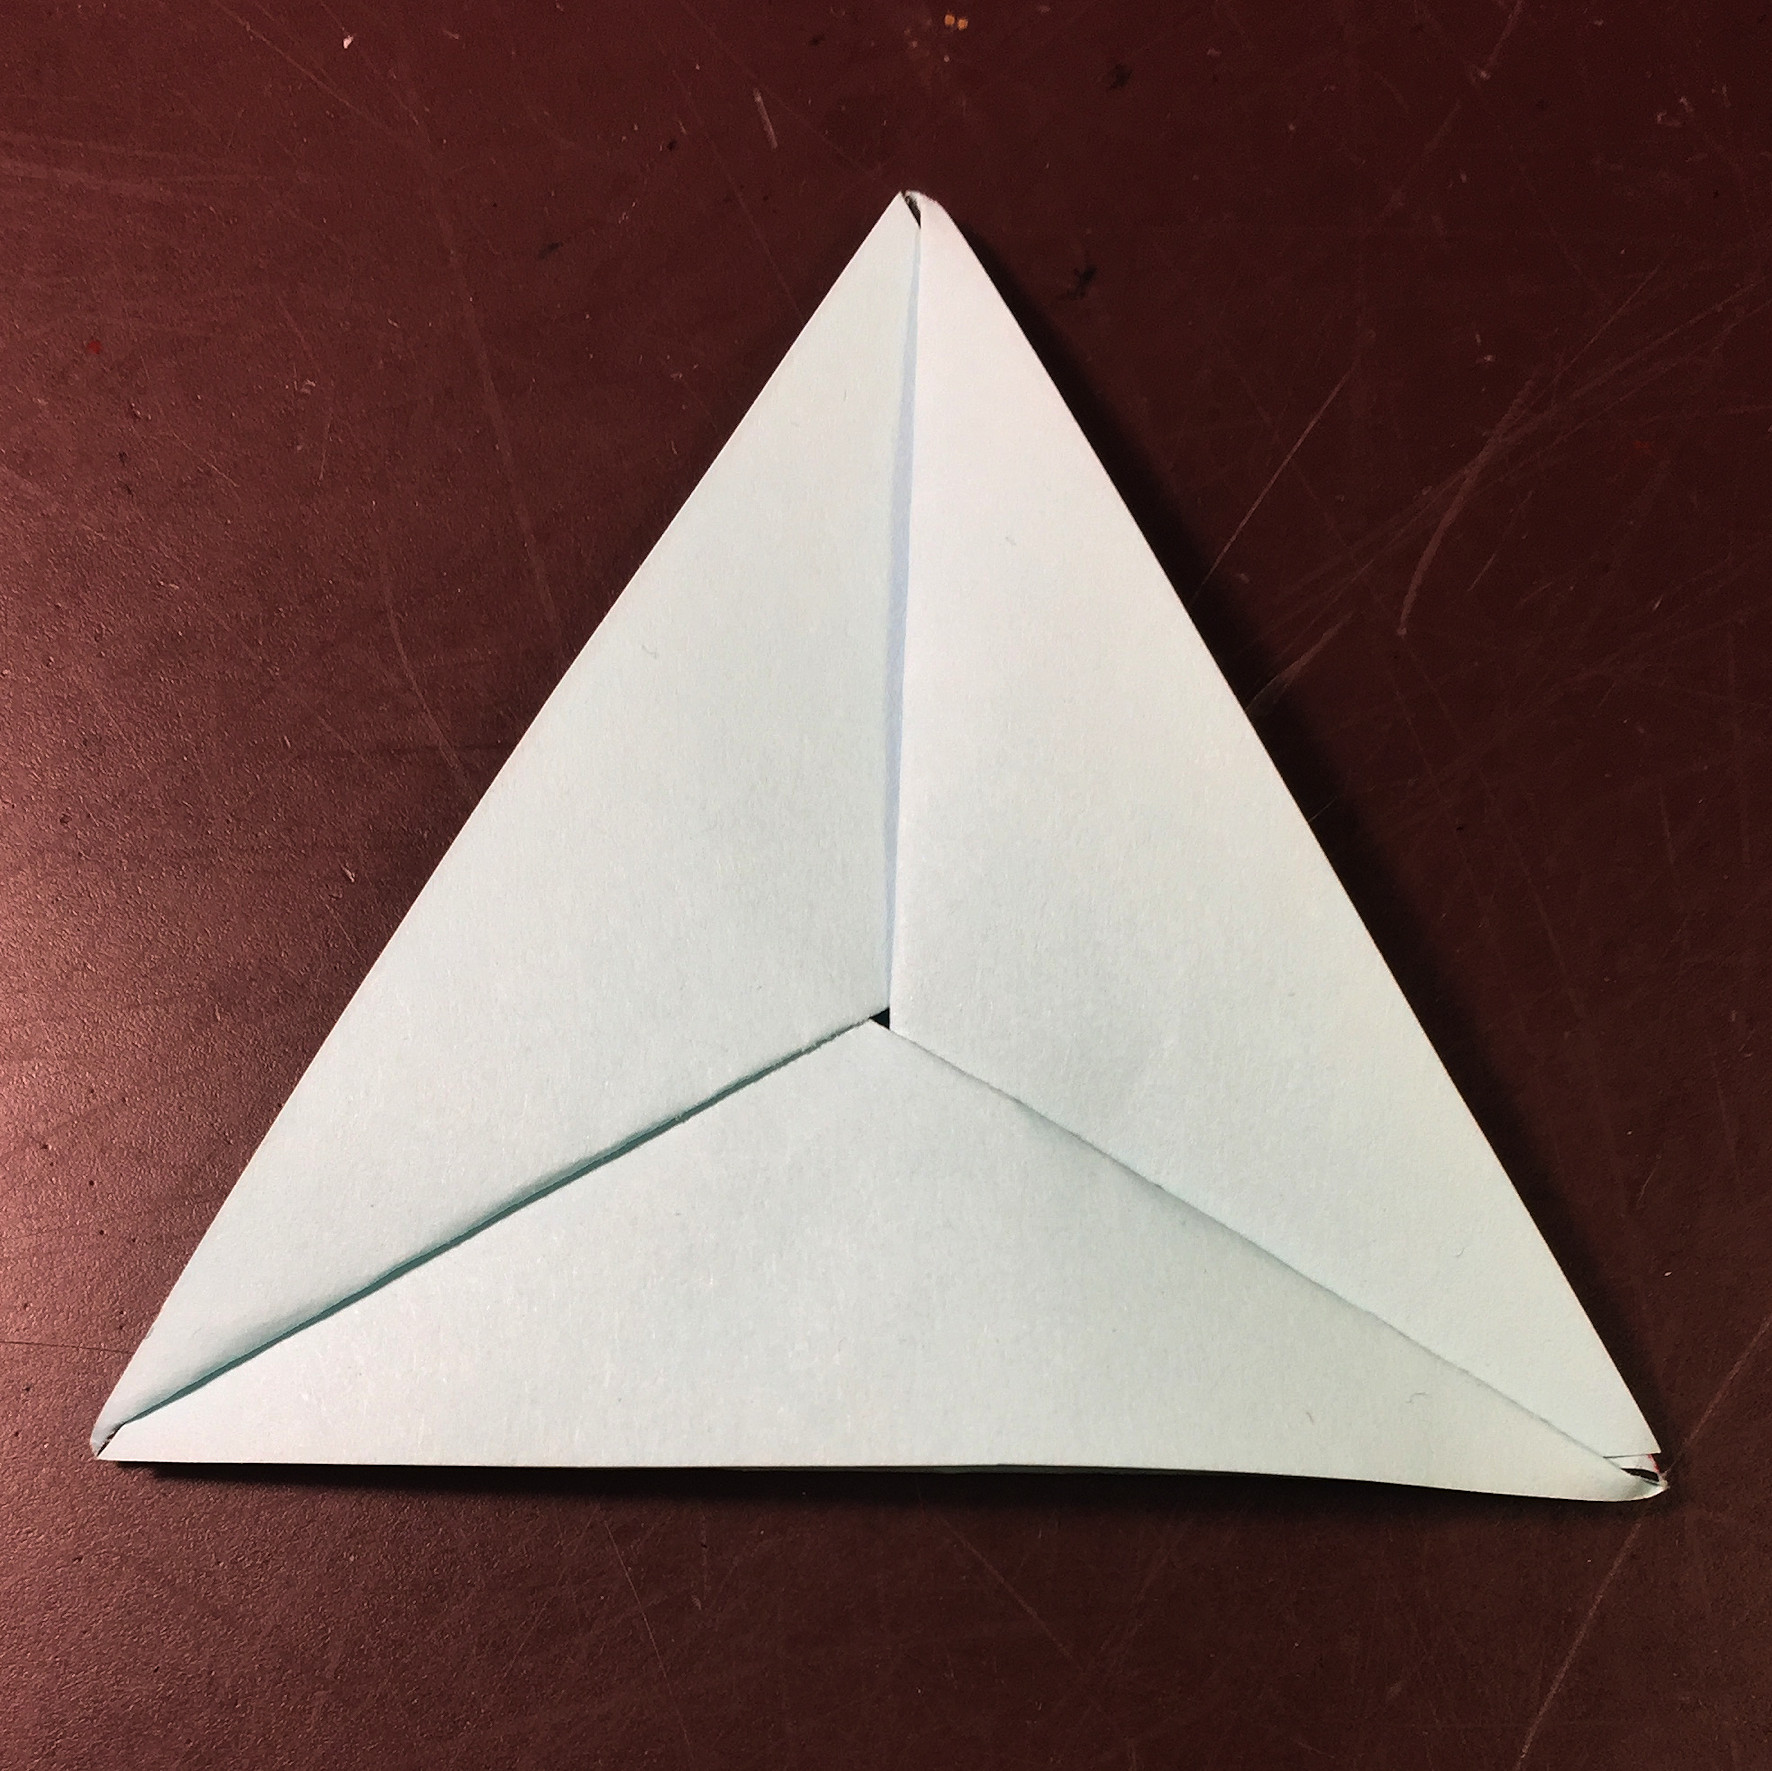 Ein Bild, das Papier, Papierkunst, Papierprodukt, Origami enthält.

Automatisch generierte Beschreibung